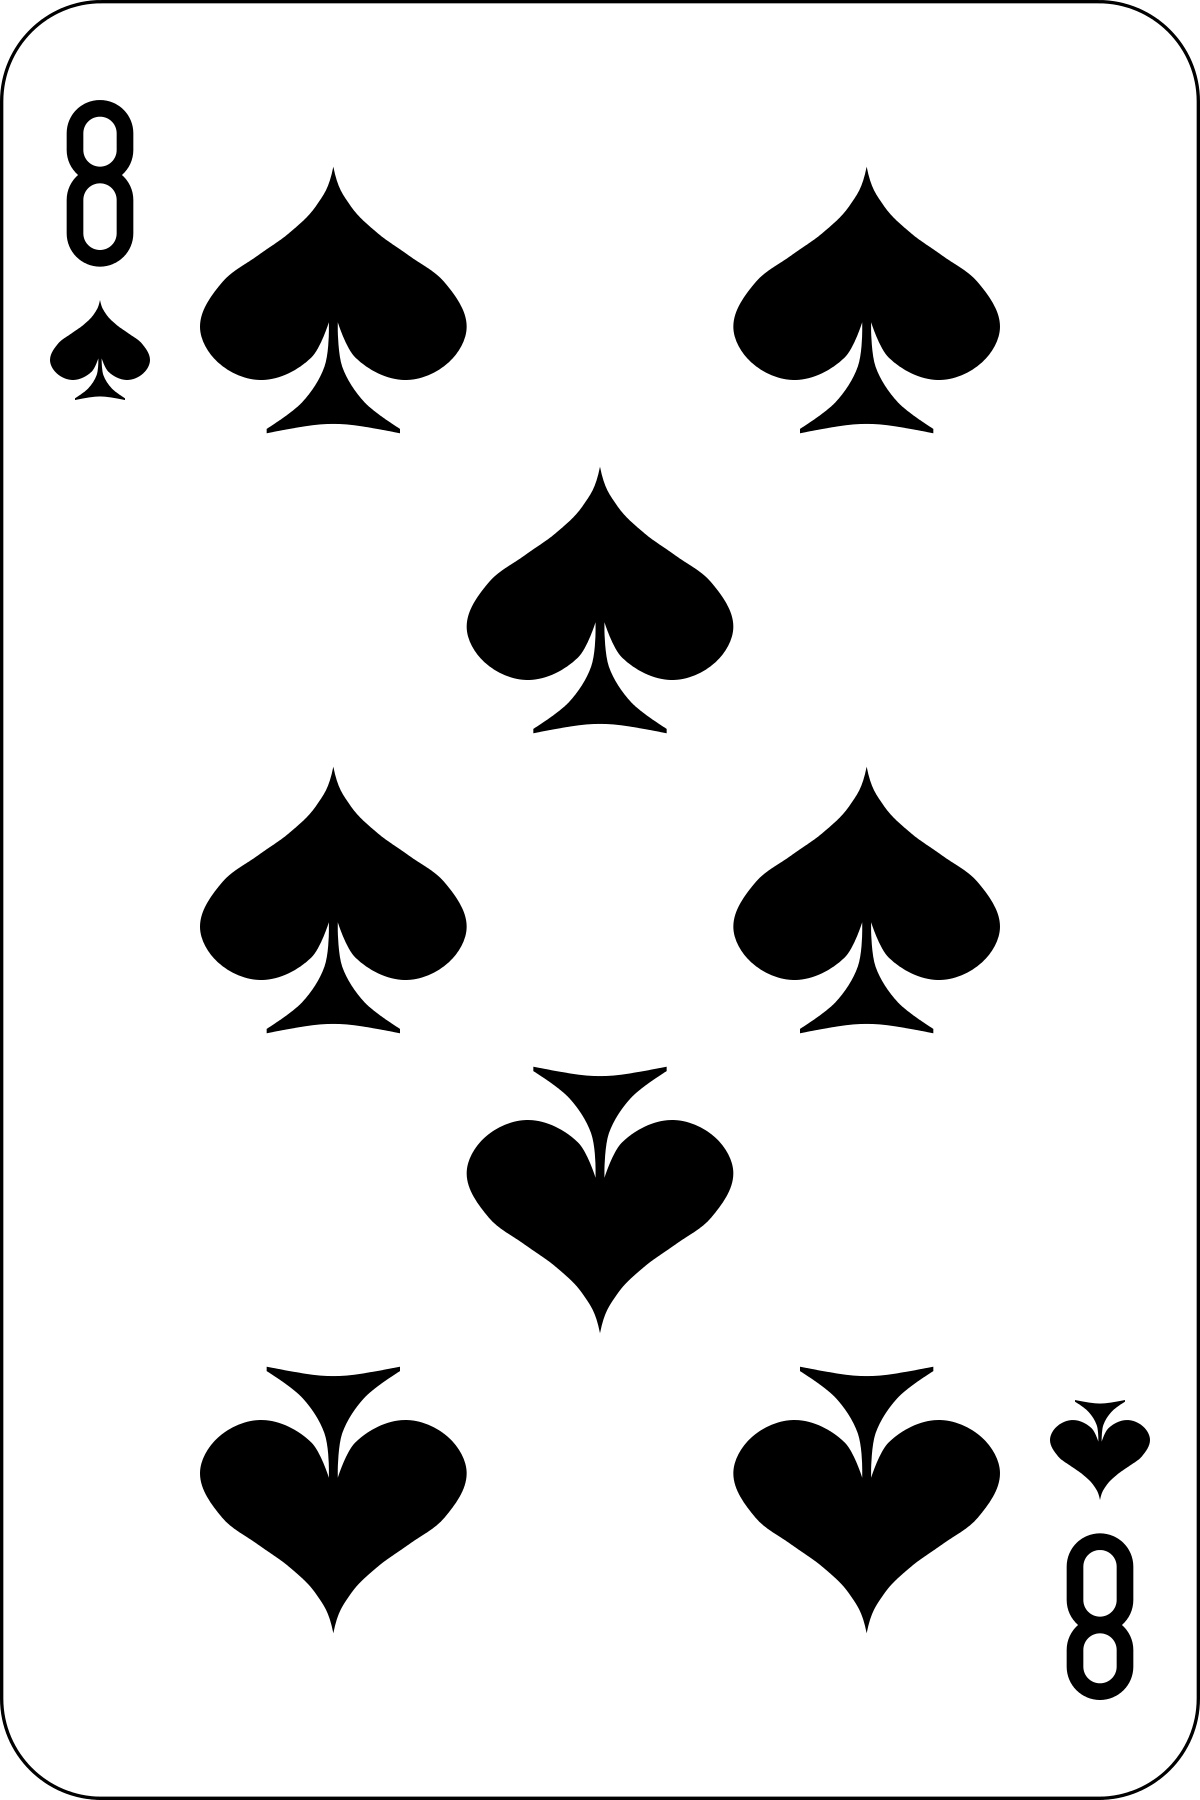 Файл:Atlas deck 8 of spades.svg — Википедия.